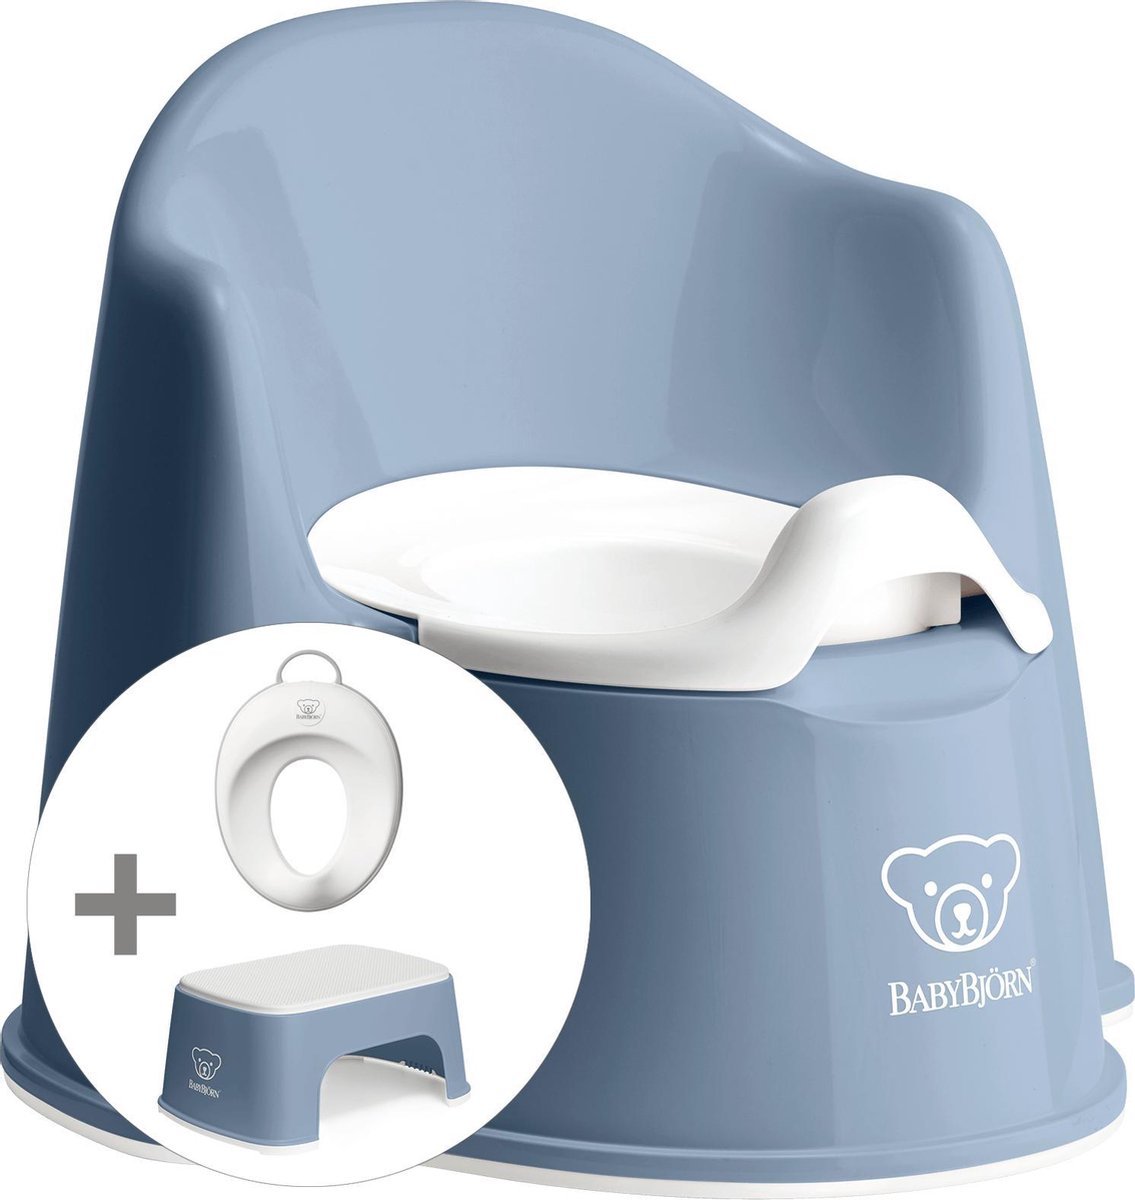 Babybjörn Pakiet Startowy Składający Się Z Nocnika, Stołka I Trenażera Toaletowego - Głęboki Niebieski I Biały